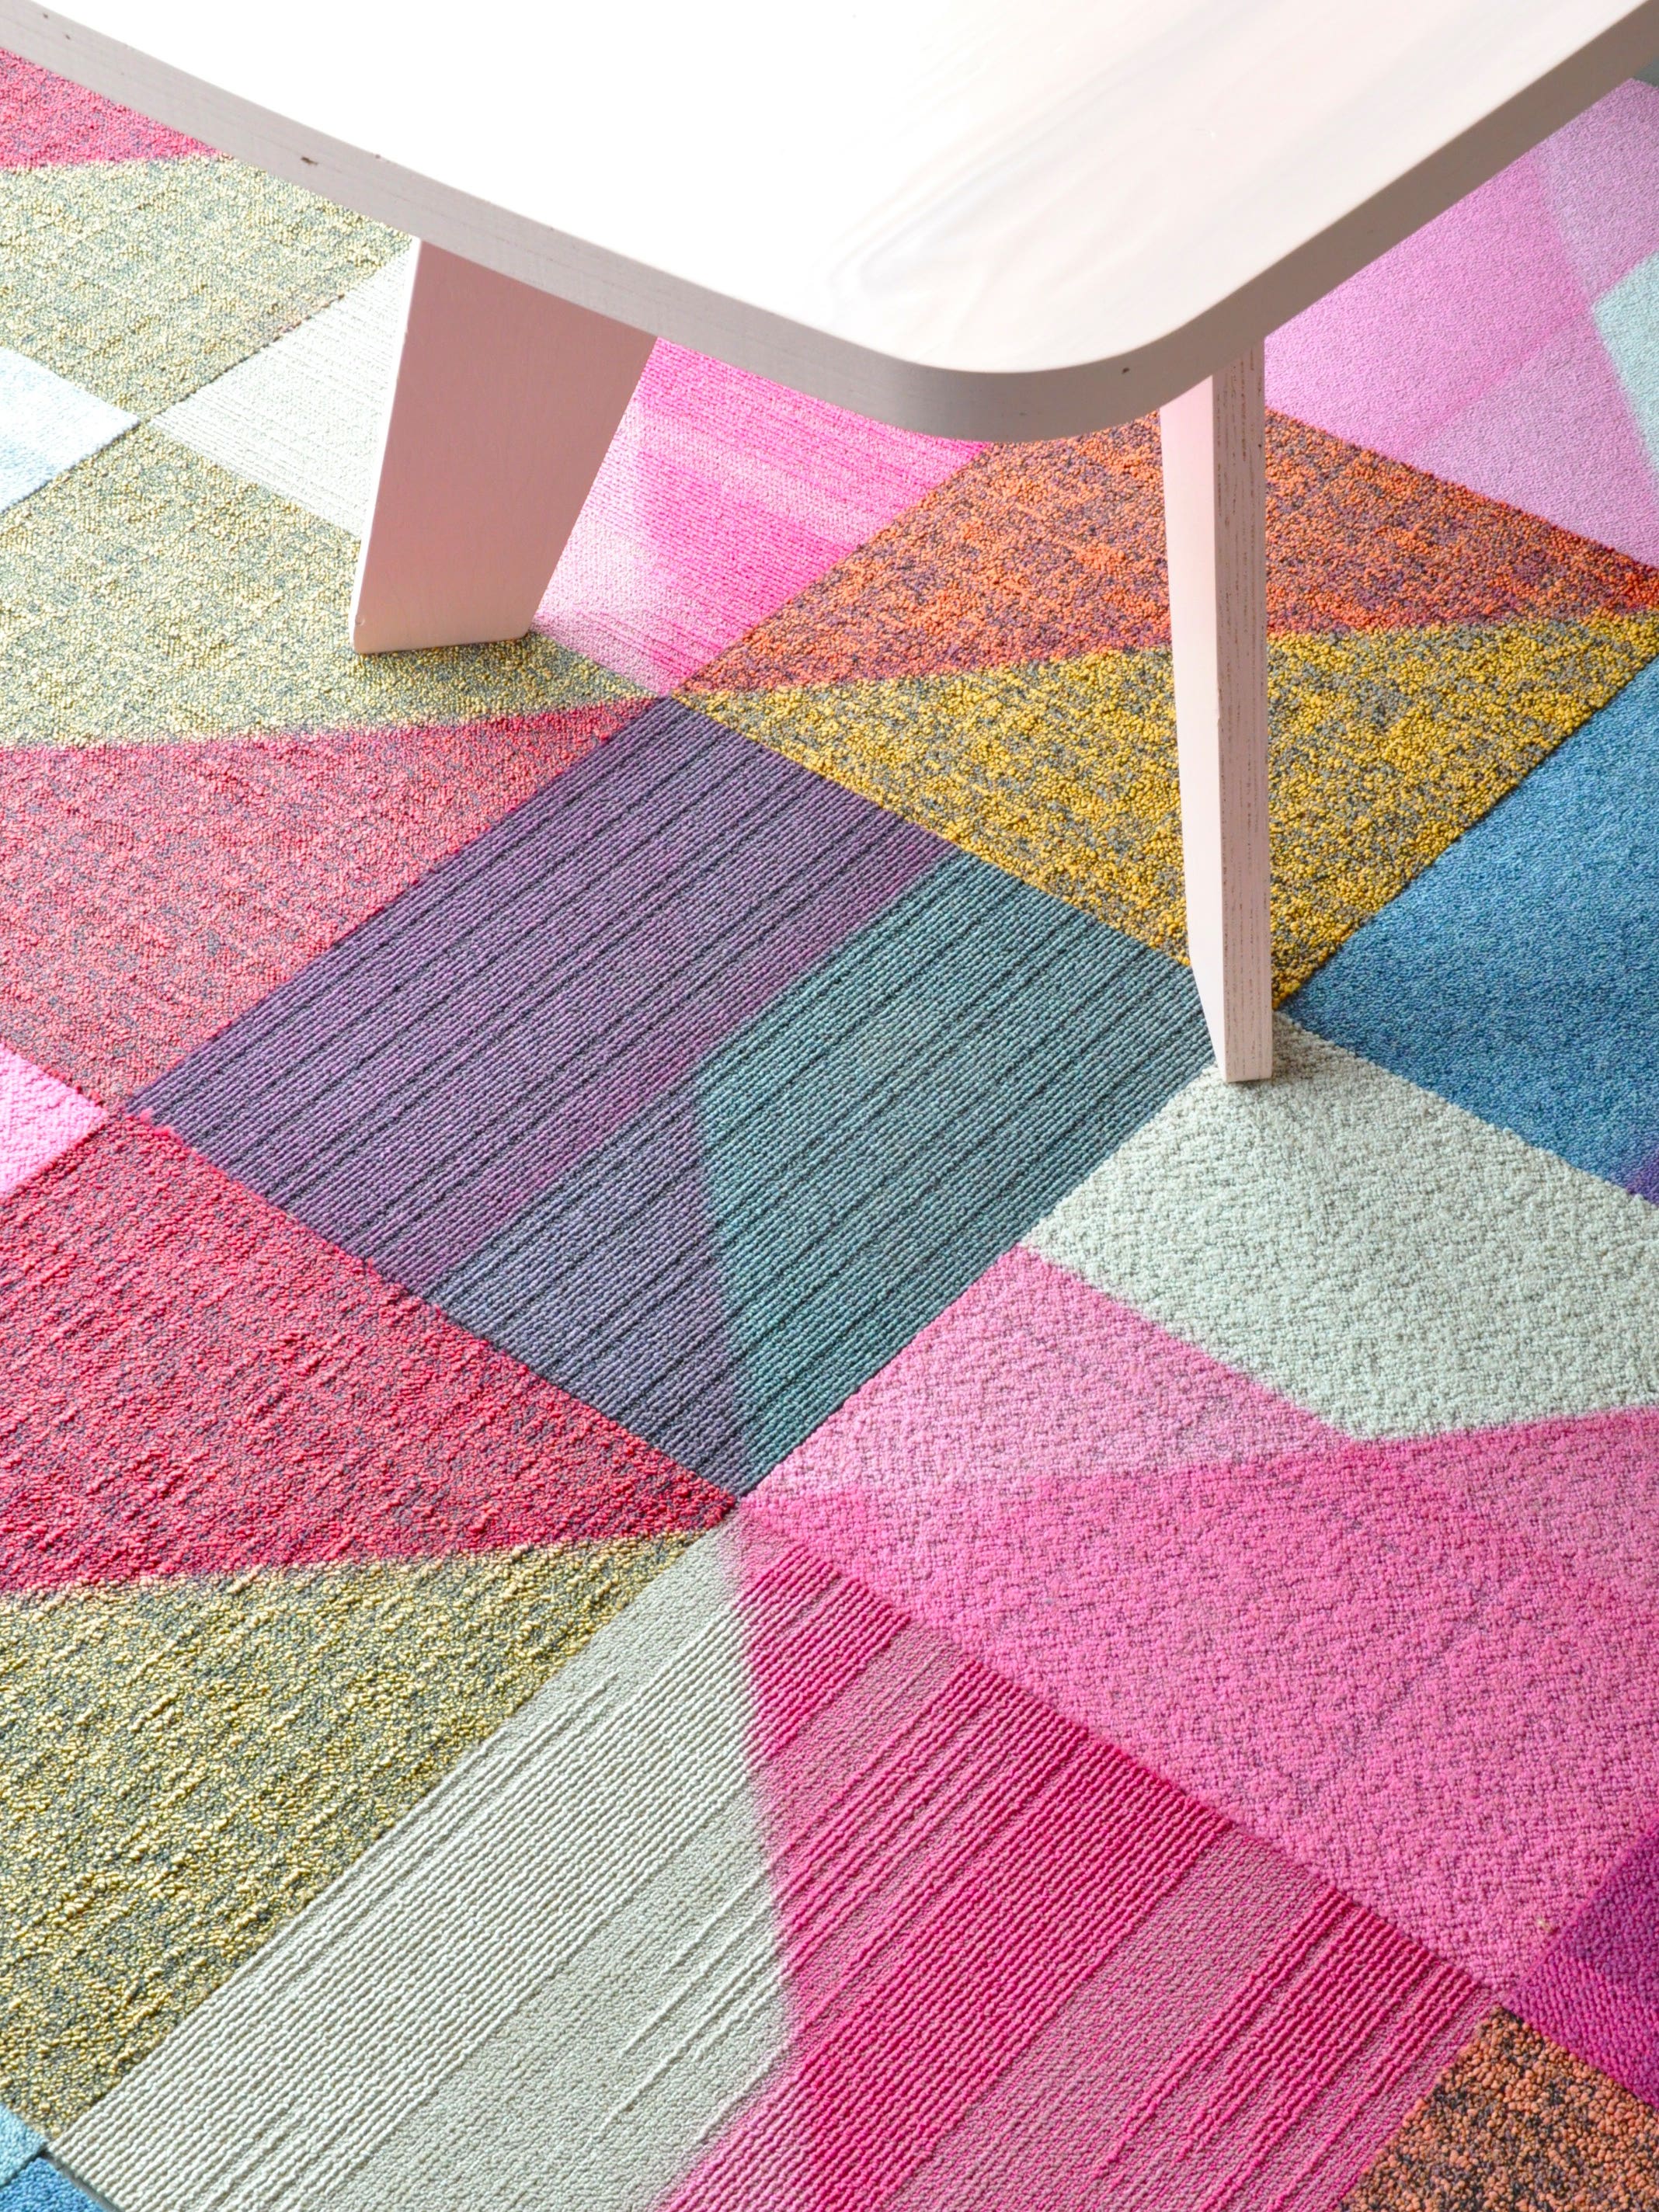 colorful carpet tiles